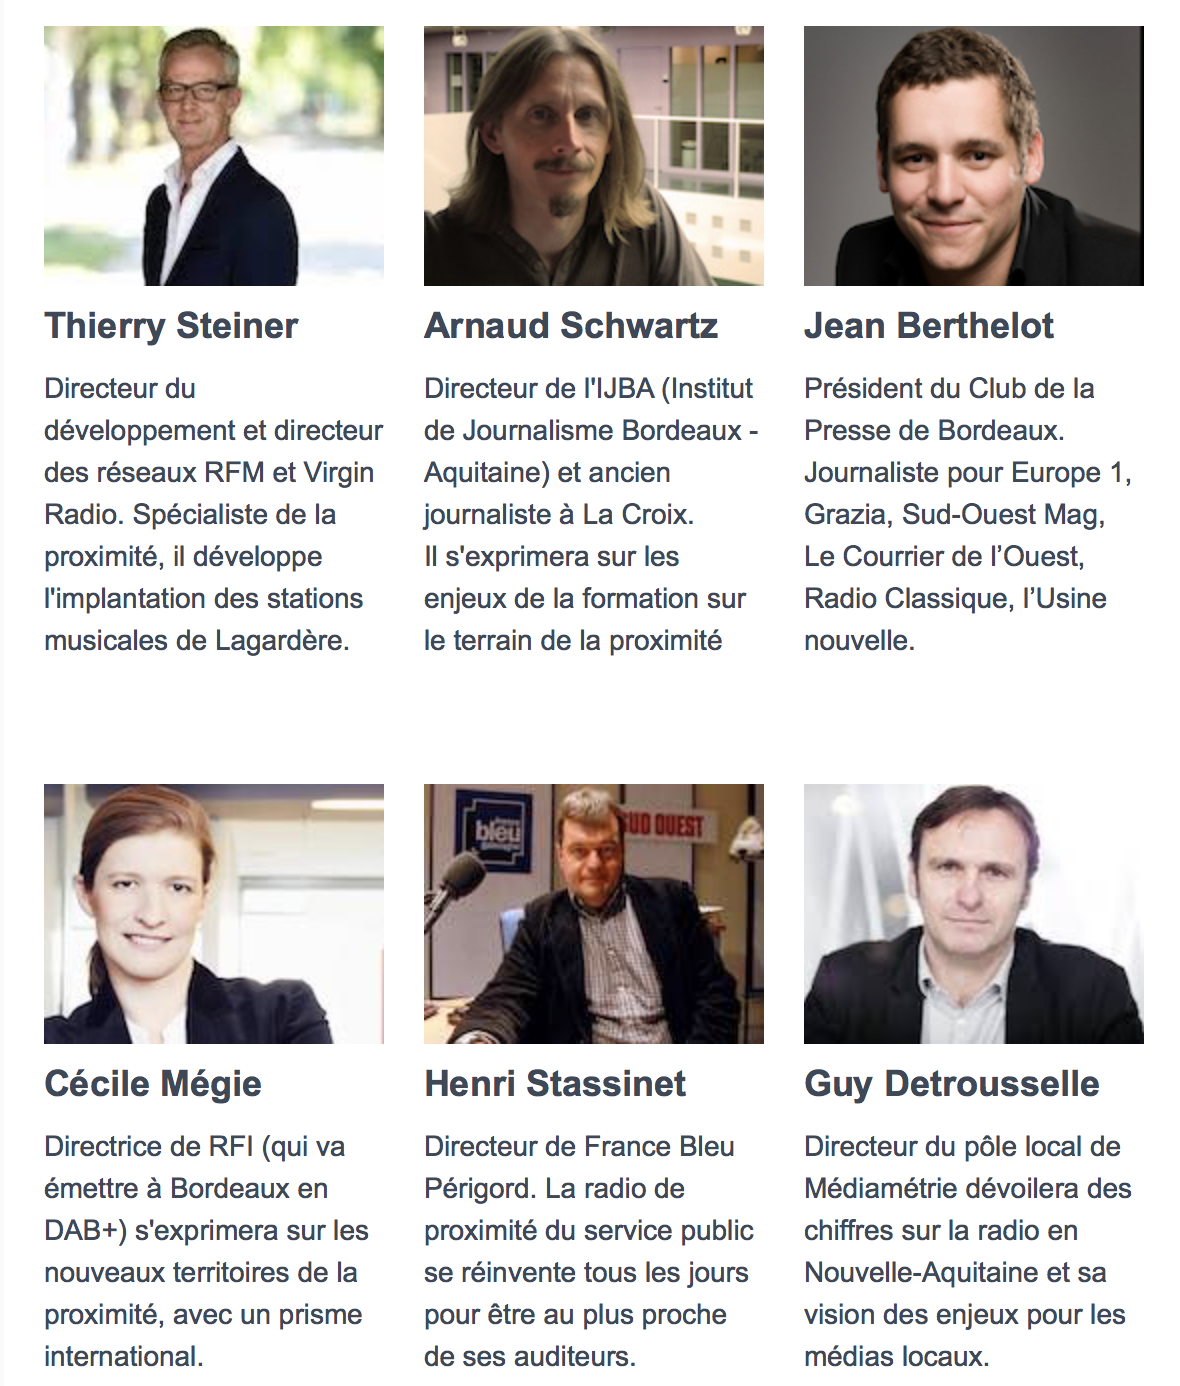 RadioTour : découvrez le programme à Bordeaux, le 5 juin 